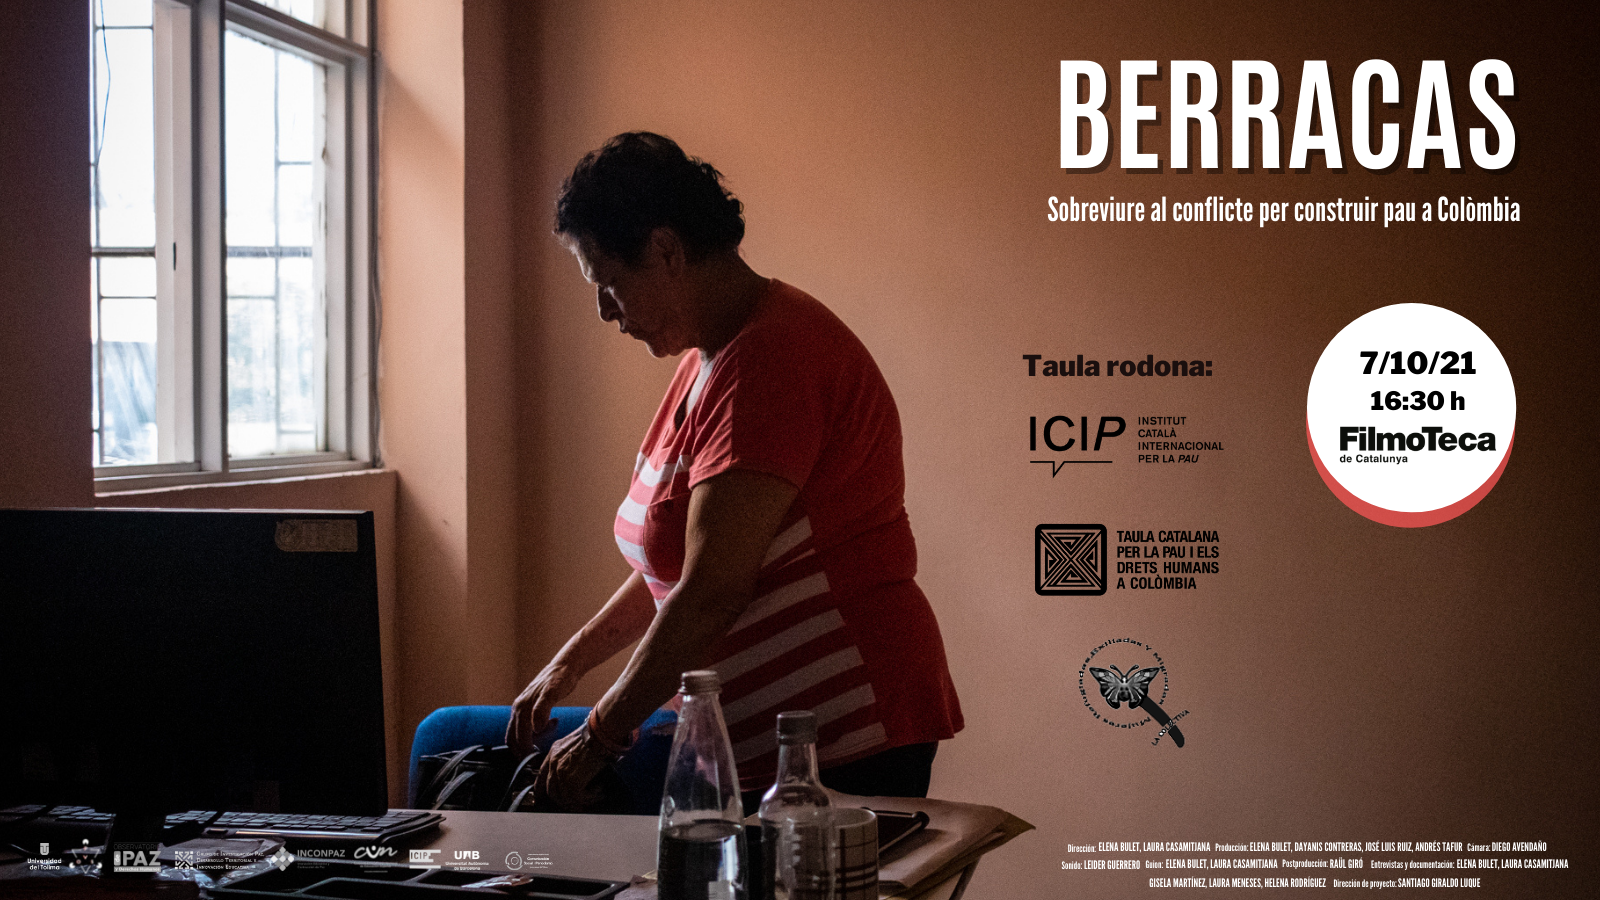 Cartel de presentación del proyecto Berracas